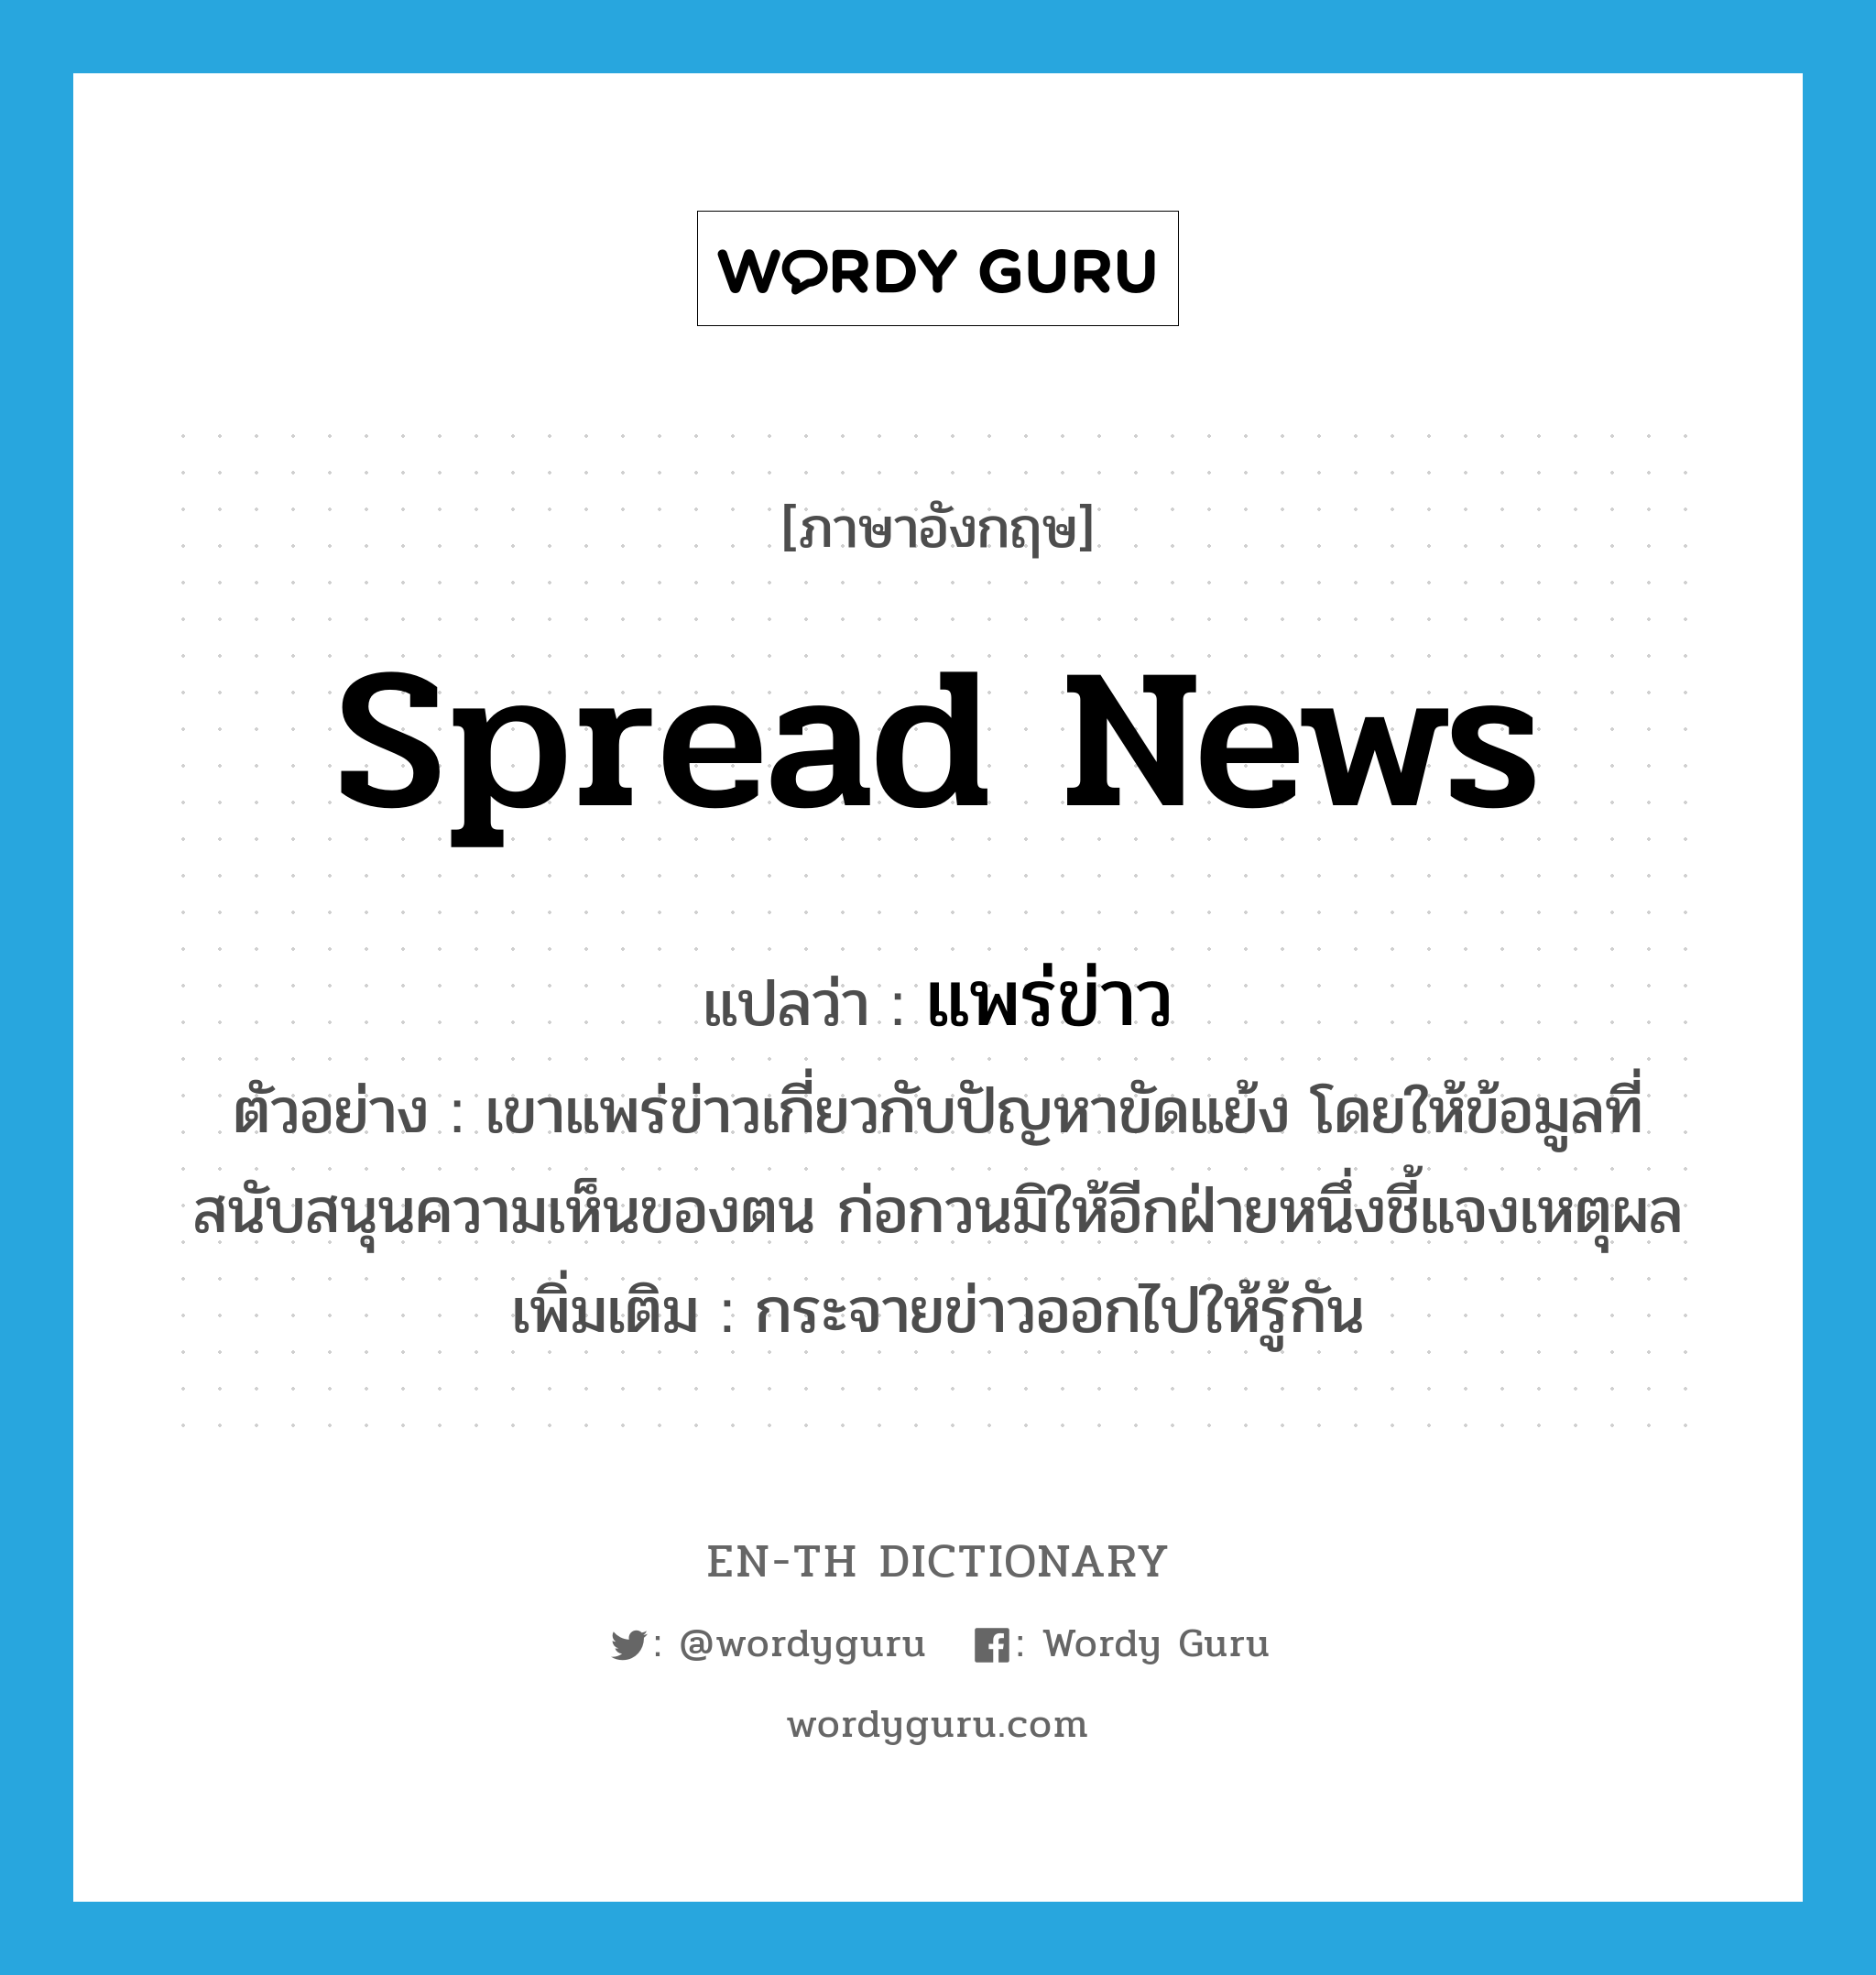 spread news แปลว่า?, คำศัพท์ภาษาอังกฤษ spread news แปลว่า แพร่ข่าว ประเภท V ตัวอย่าง เขาแพร่ข่าวเกี่ยวกับปัญหาขัดแย้ง โดยให้ข้อมูลที่สนับสนุนความเห็นของตน ก่อกวนมิให้อีกฝ่ายหนึ่งชี้แจงเหตุผล เพิ่มเติม กระจายข่าวออกไปให้รู้กัน หมวด V